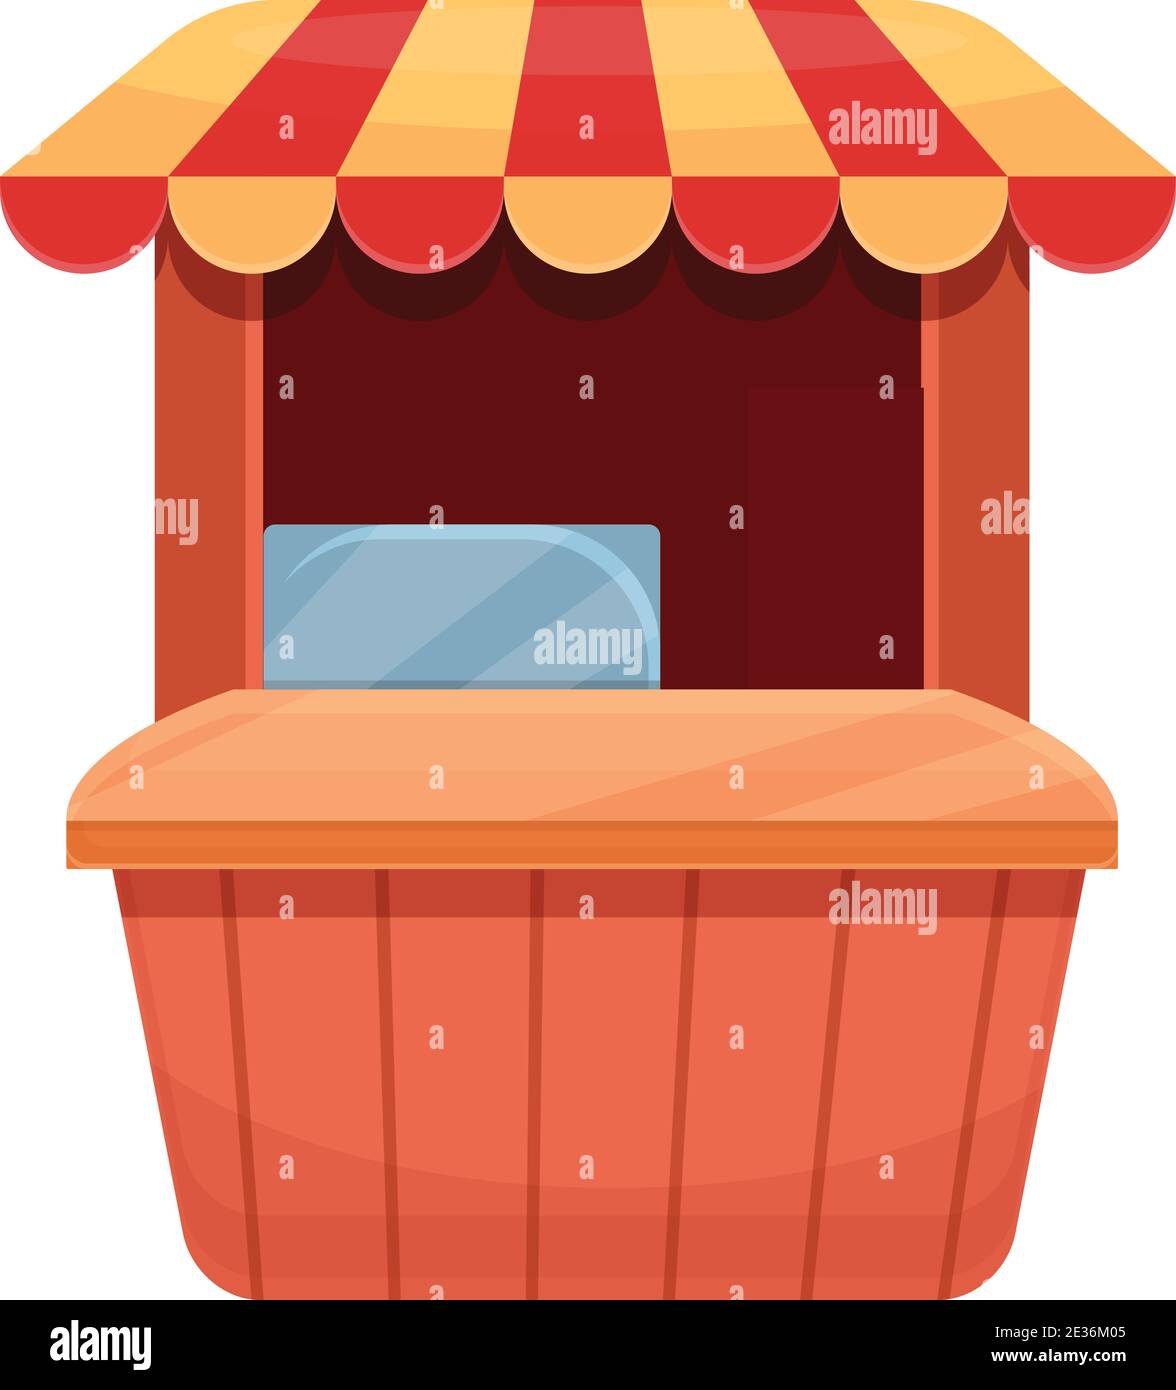 Icona del distributore di cibo di strada. Cartoon di Street food vending stand icona vettoriale per web design isolato su sfondo bianco Illustrazione Vettoriale